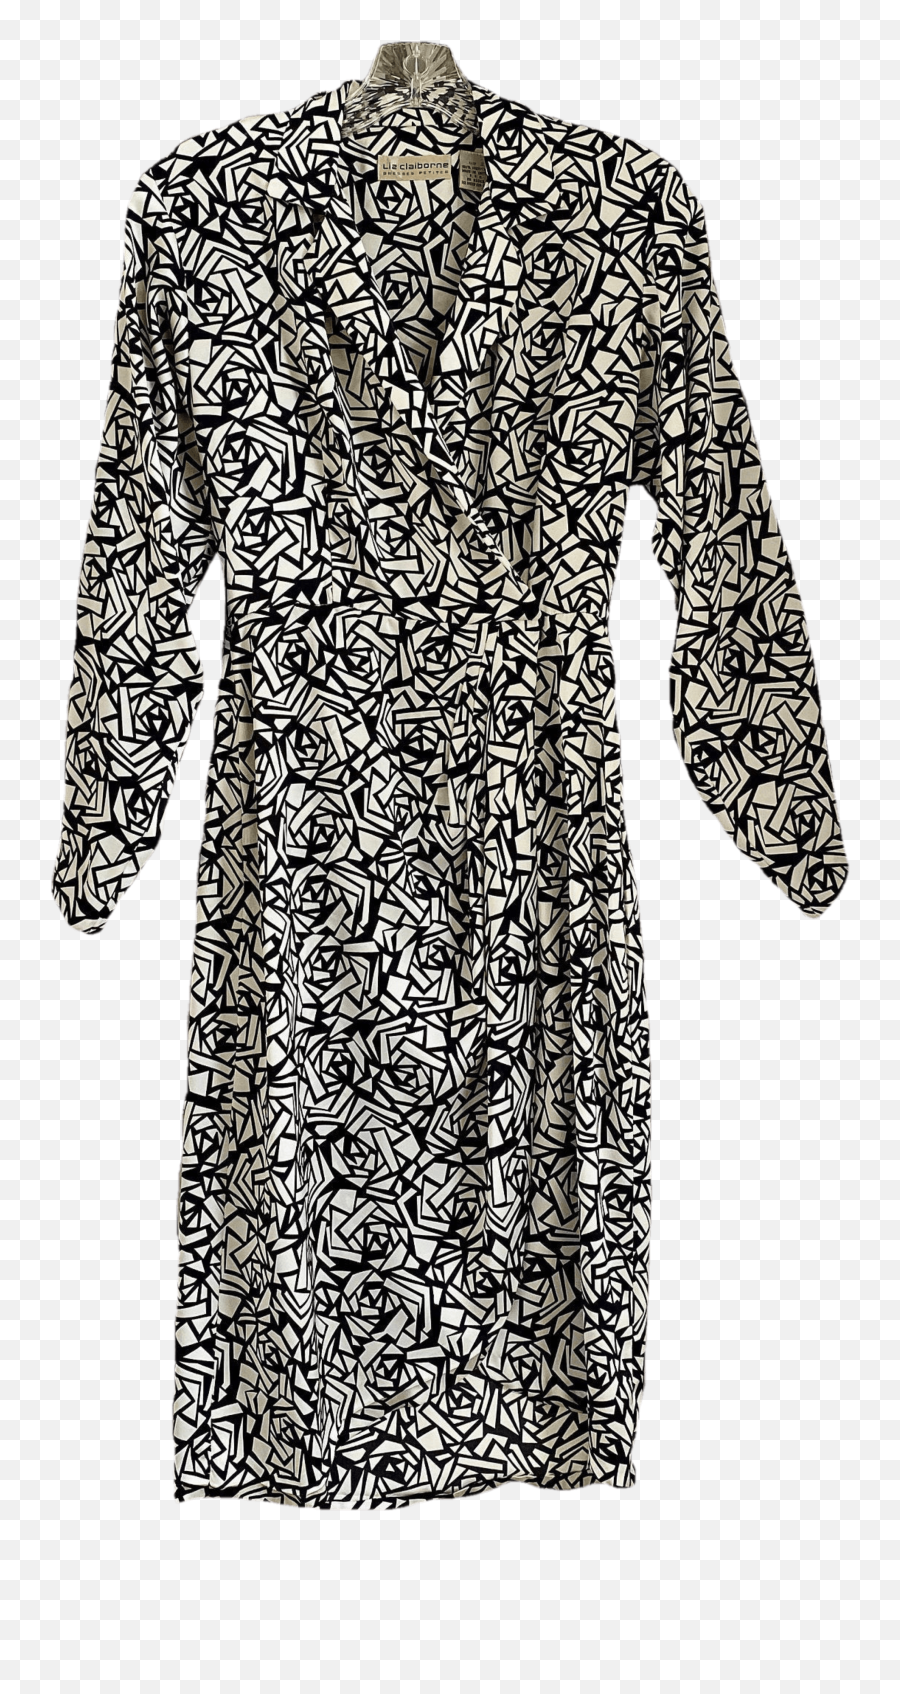 80u0027s Statement Dress Print Black And White Dress By Liz Emoji,Liz Claiborne Logo